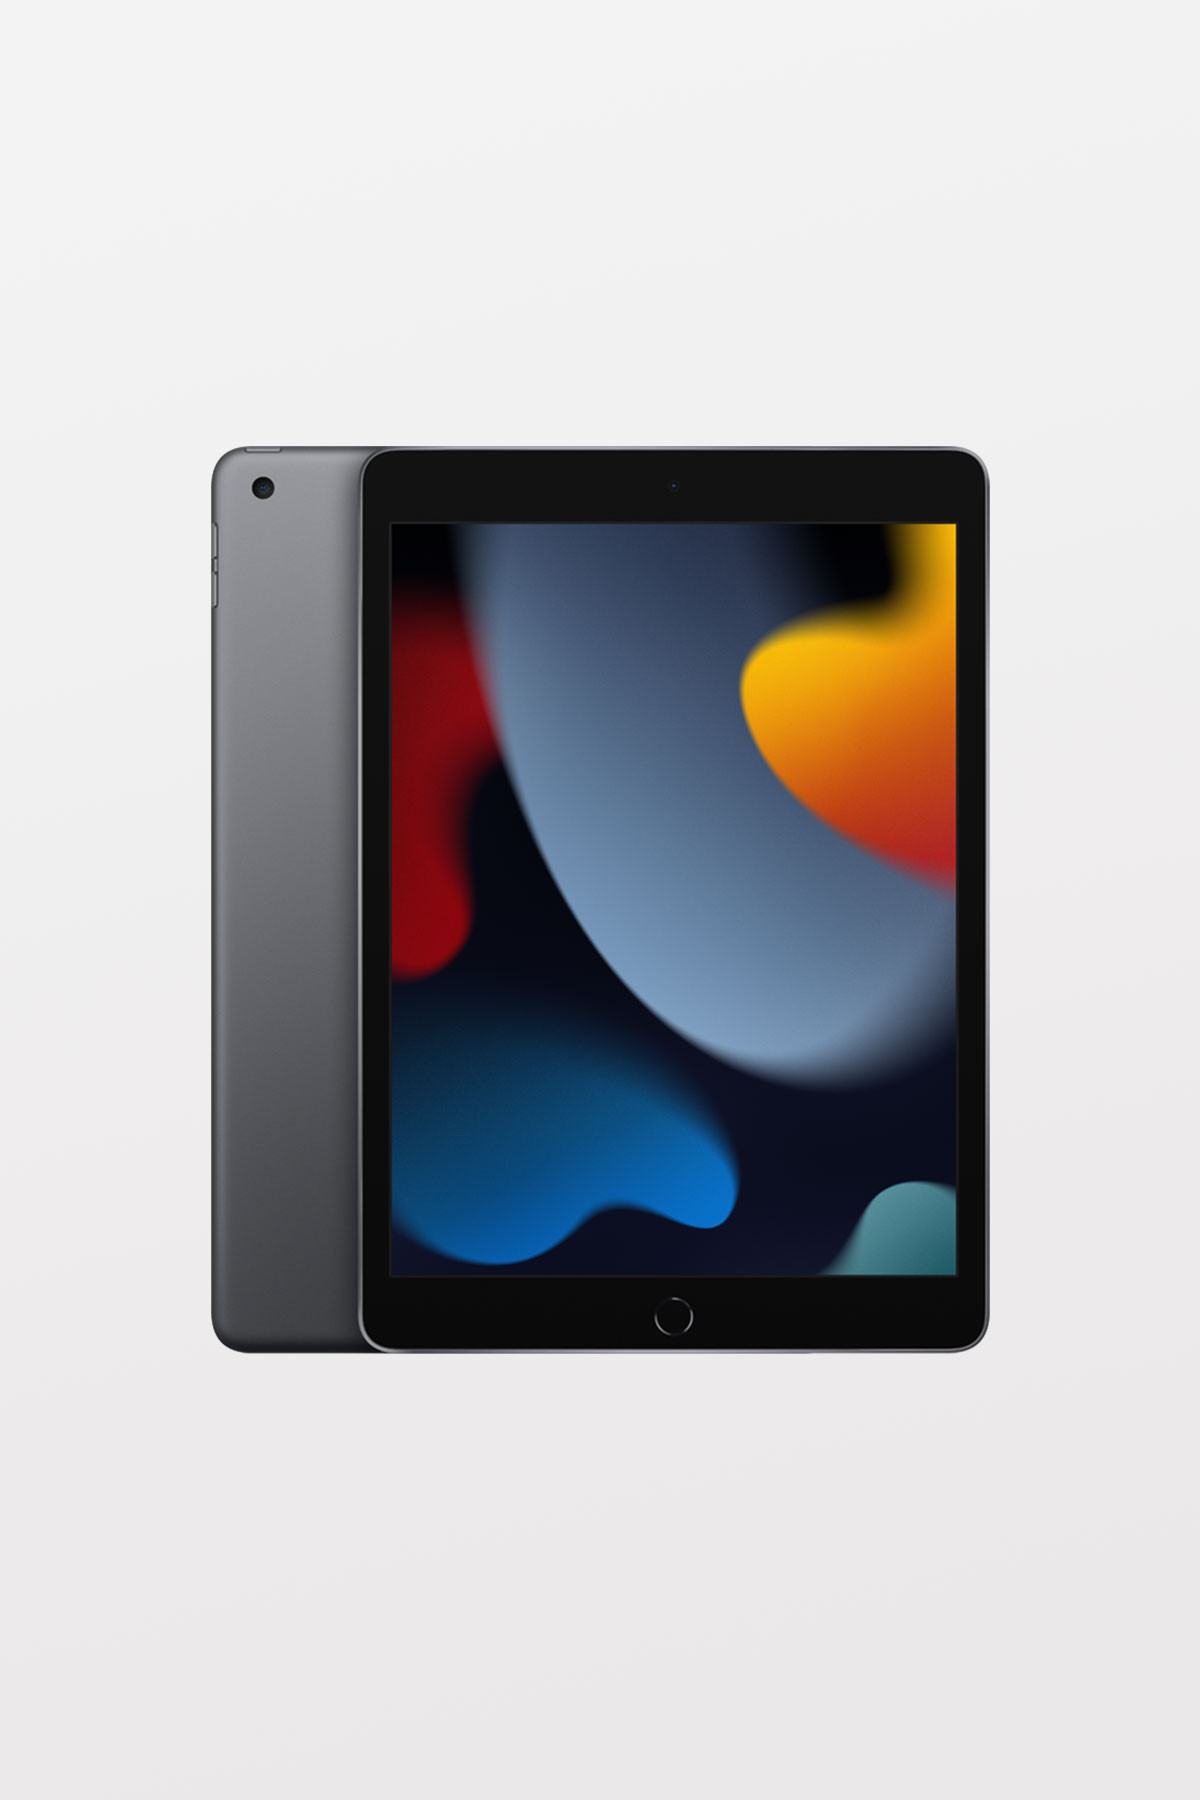 Apple iPad (9th Gen) 10.2-inch Wi-Fi + Cellular 64GB — Space Grey